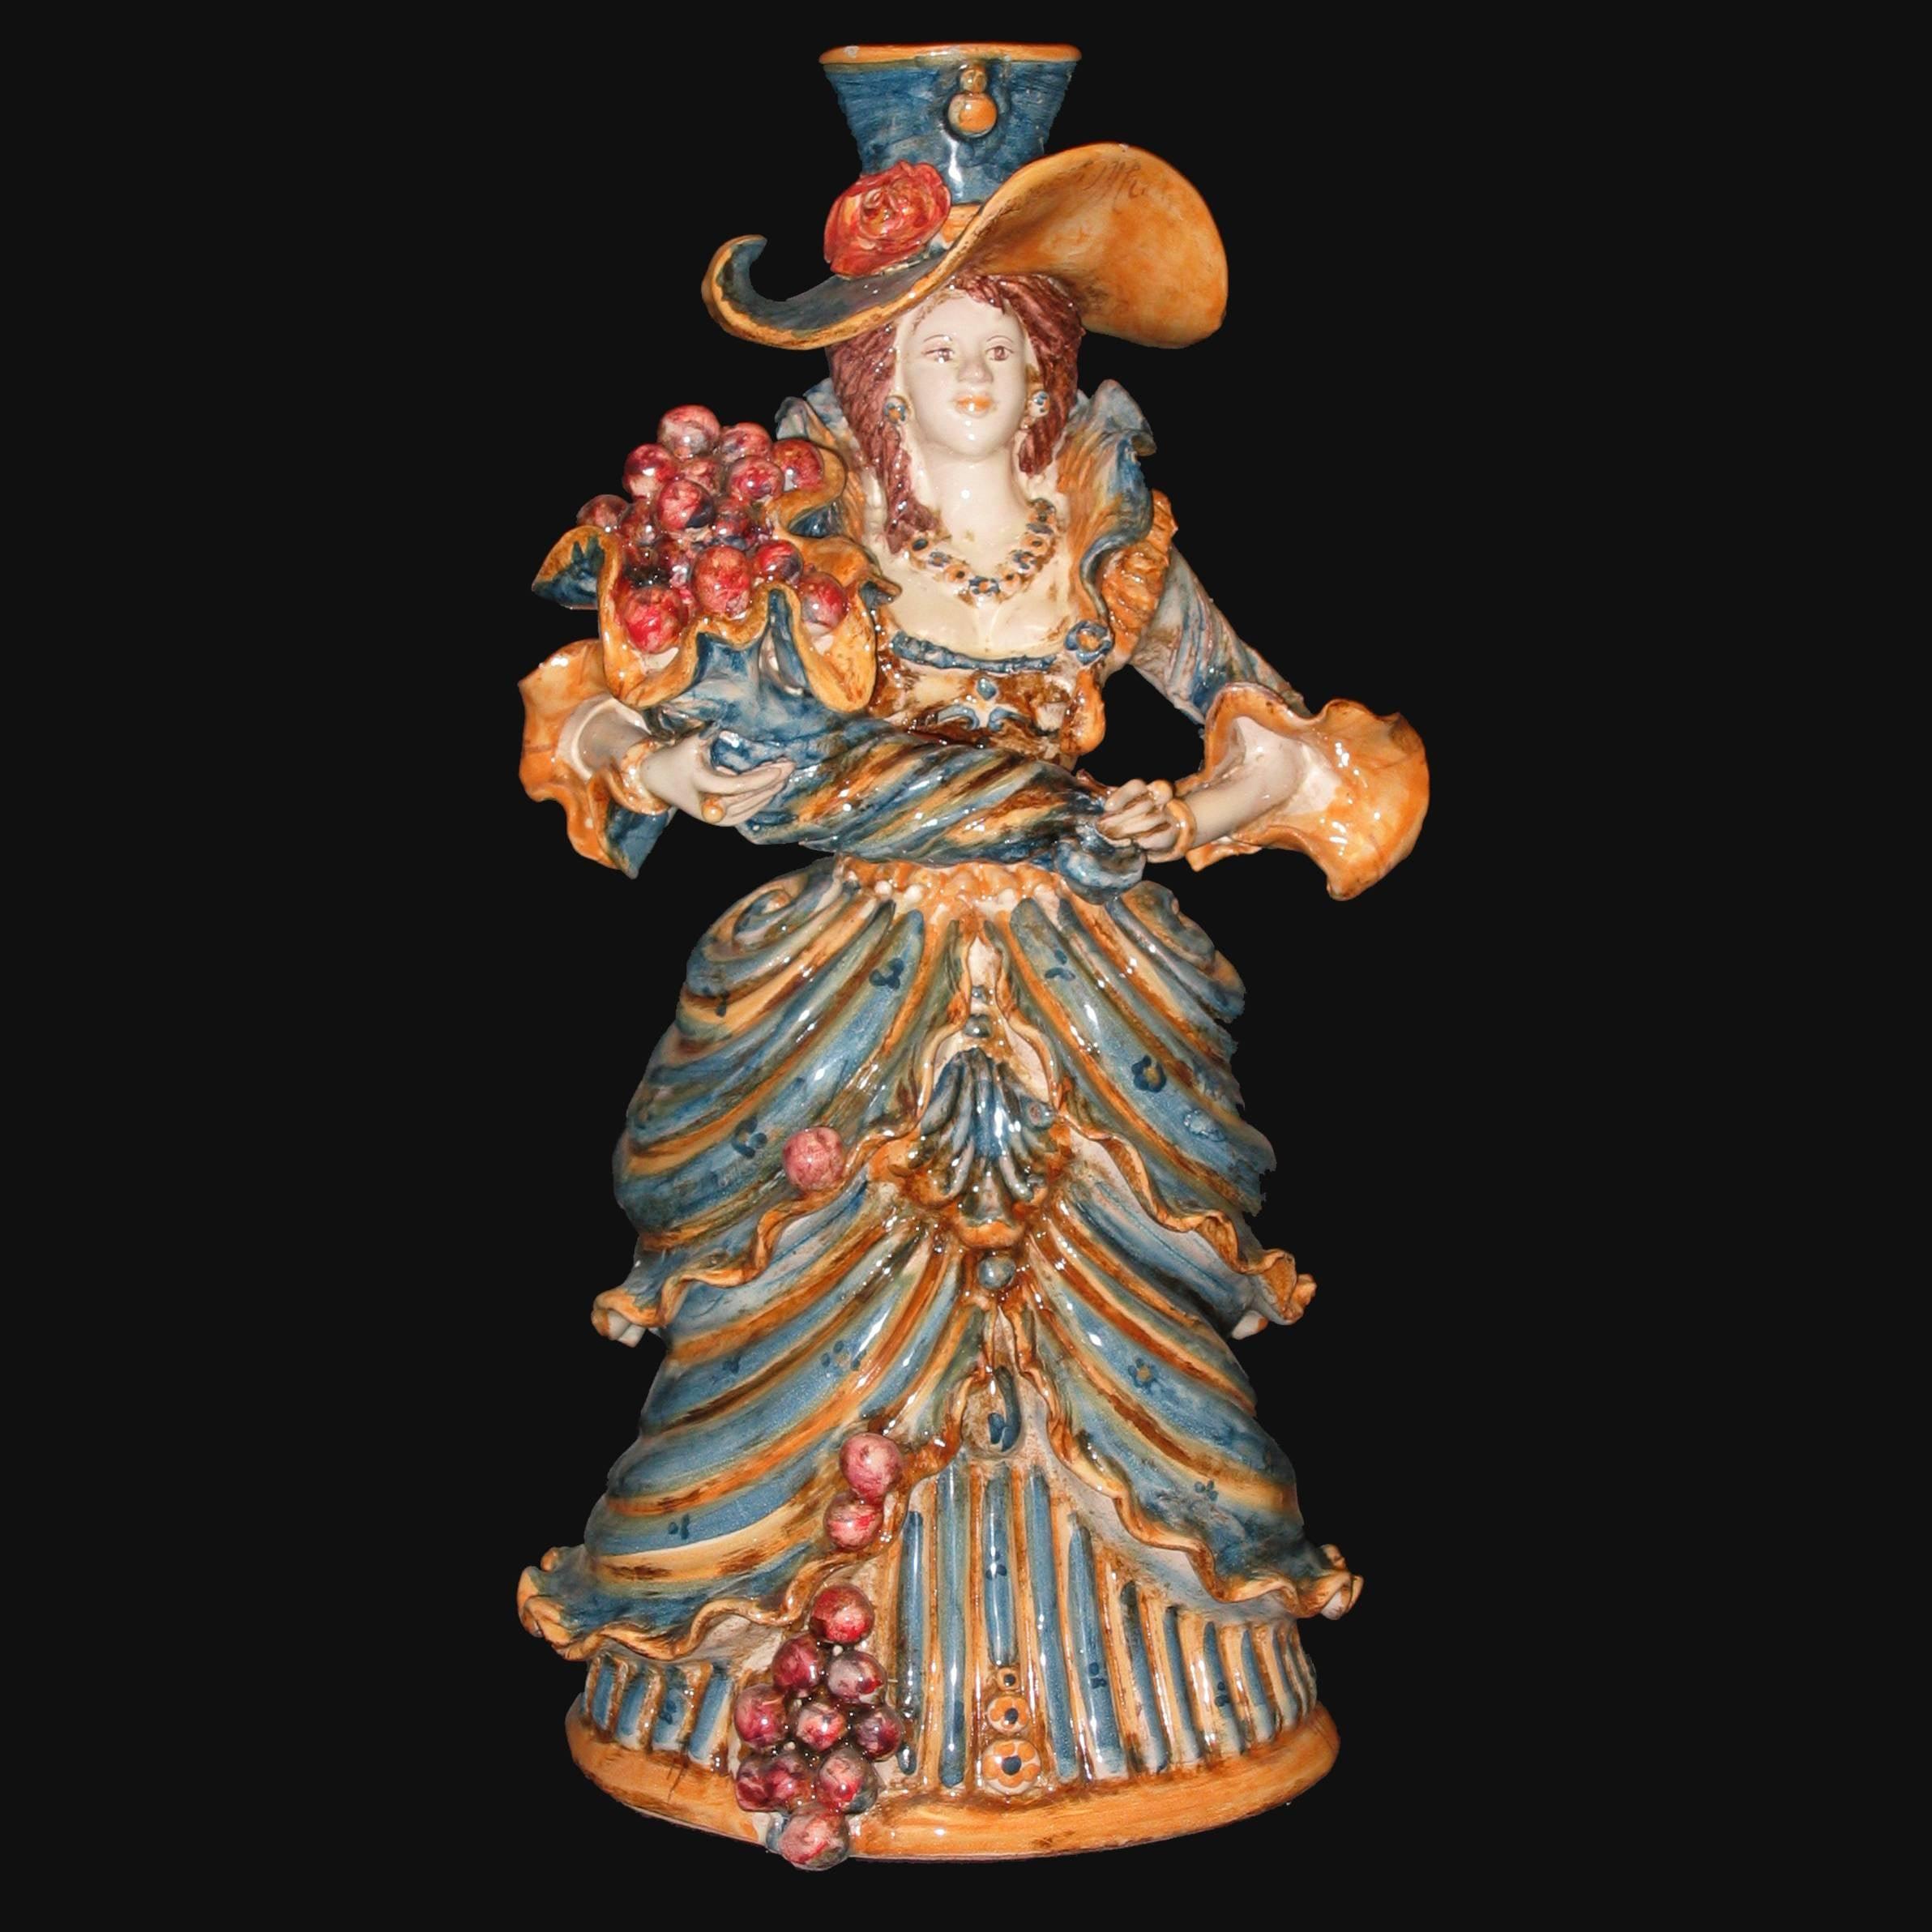 Lumiera media femmina h 34 blu/arancio - Modellata a mano - Ceramiche di Caltagirone Sofia